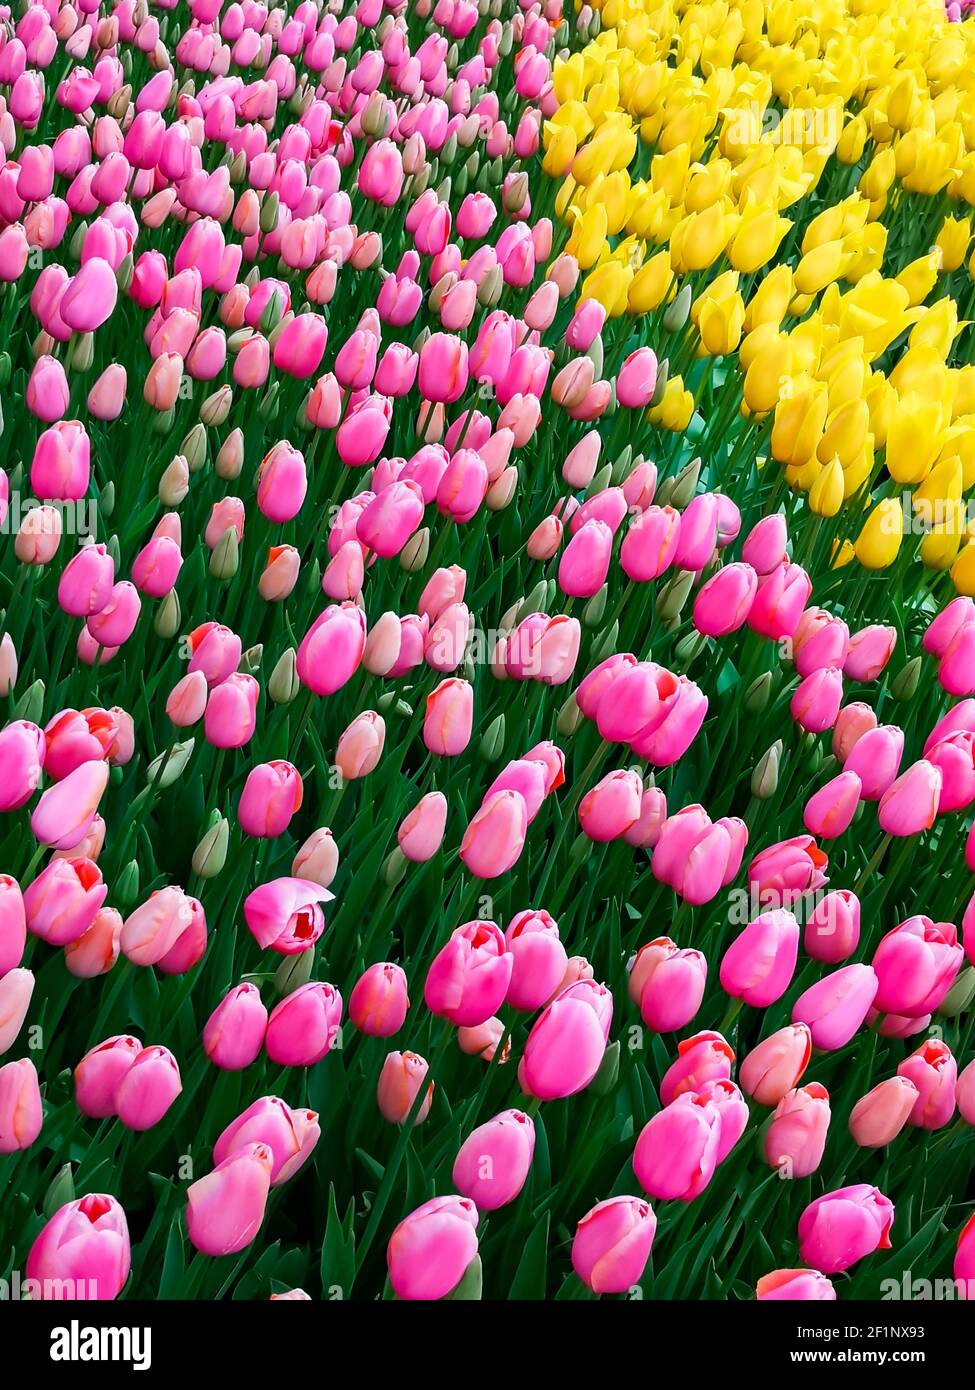 Nombreux tulipes romantiques et de saison. Un champ de fleurs roses et jaunes. Bouquet cadeau de printemps. Magnifique fond naturel à la lumière du jour Banque D'Images